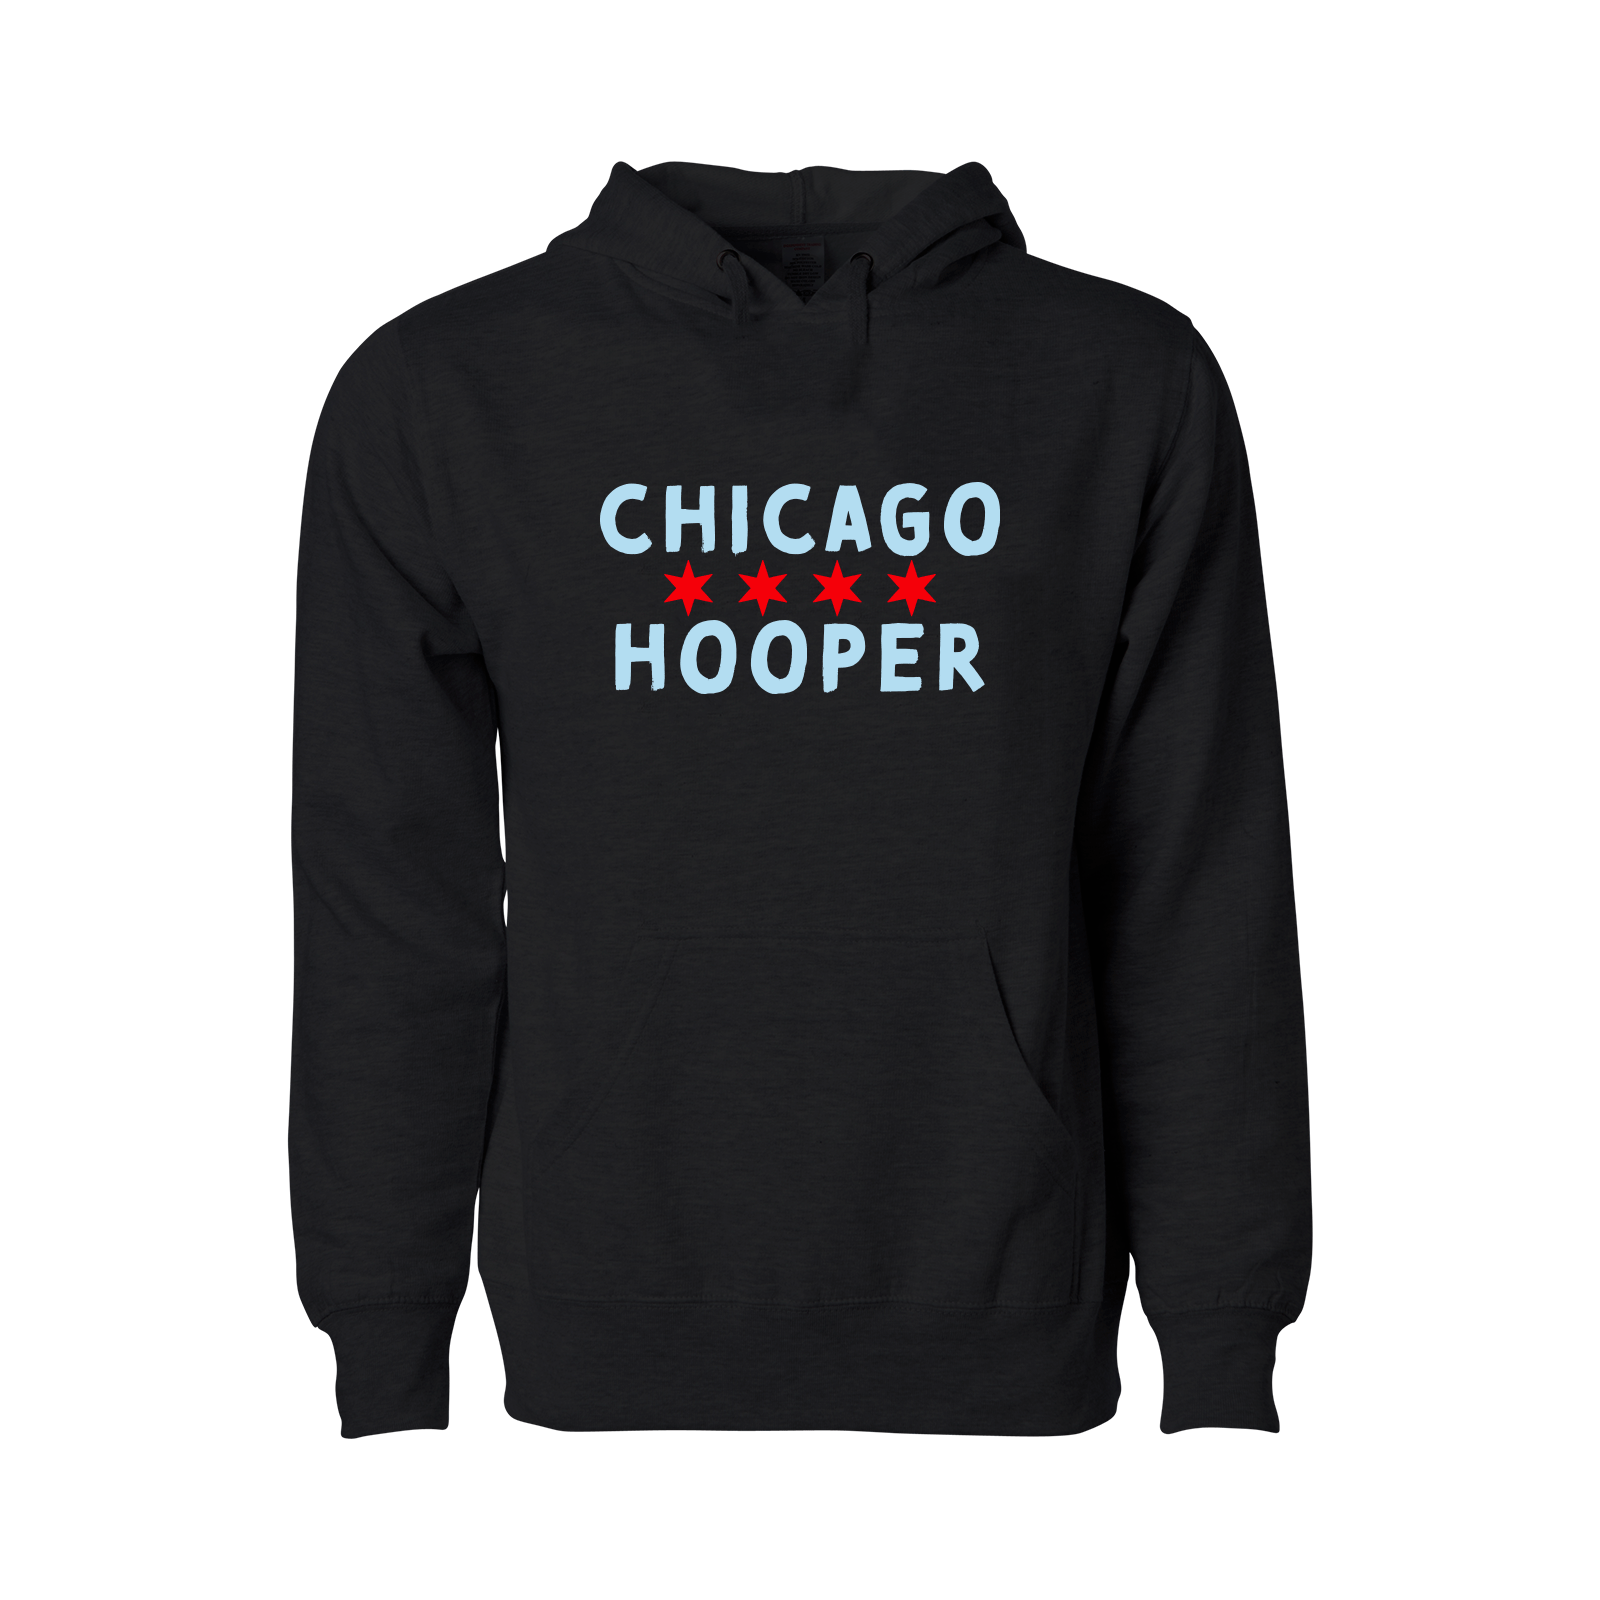 Chicago Hooper Hoodie - Adult